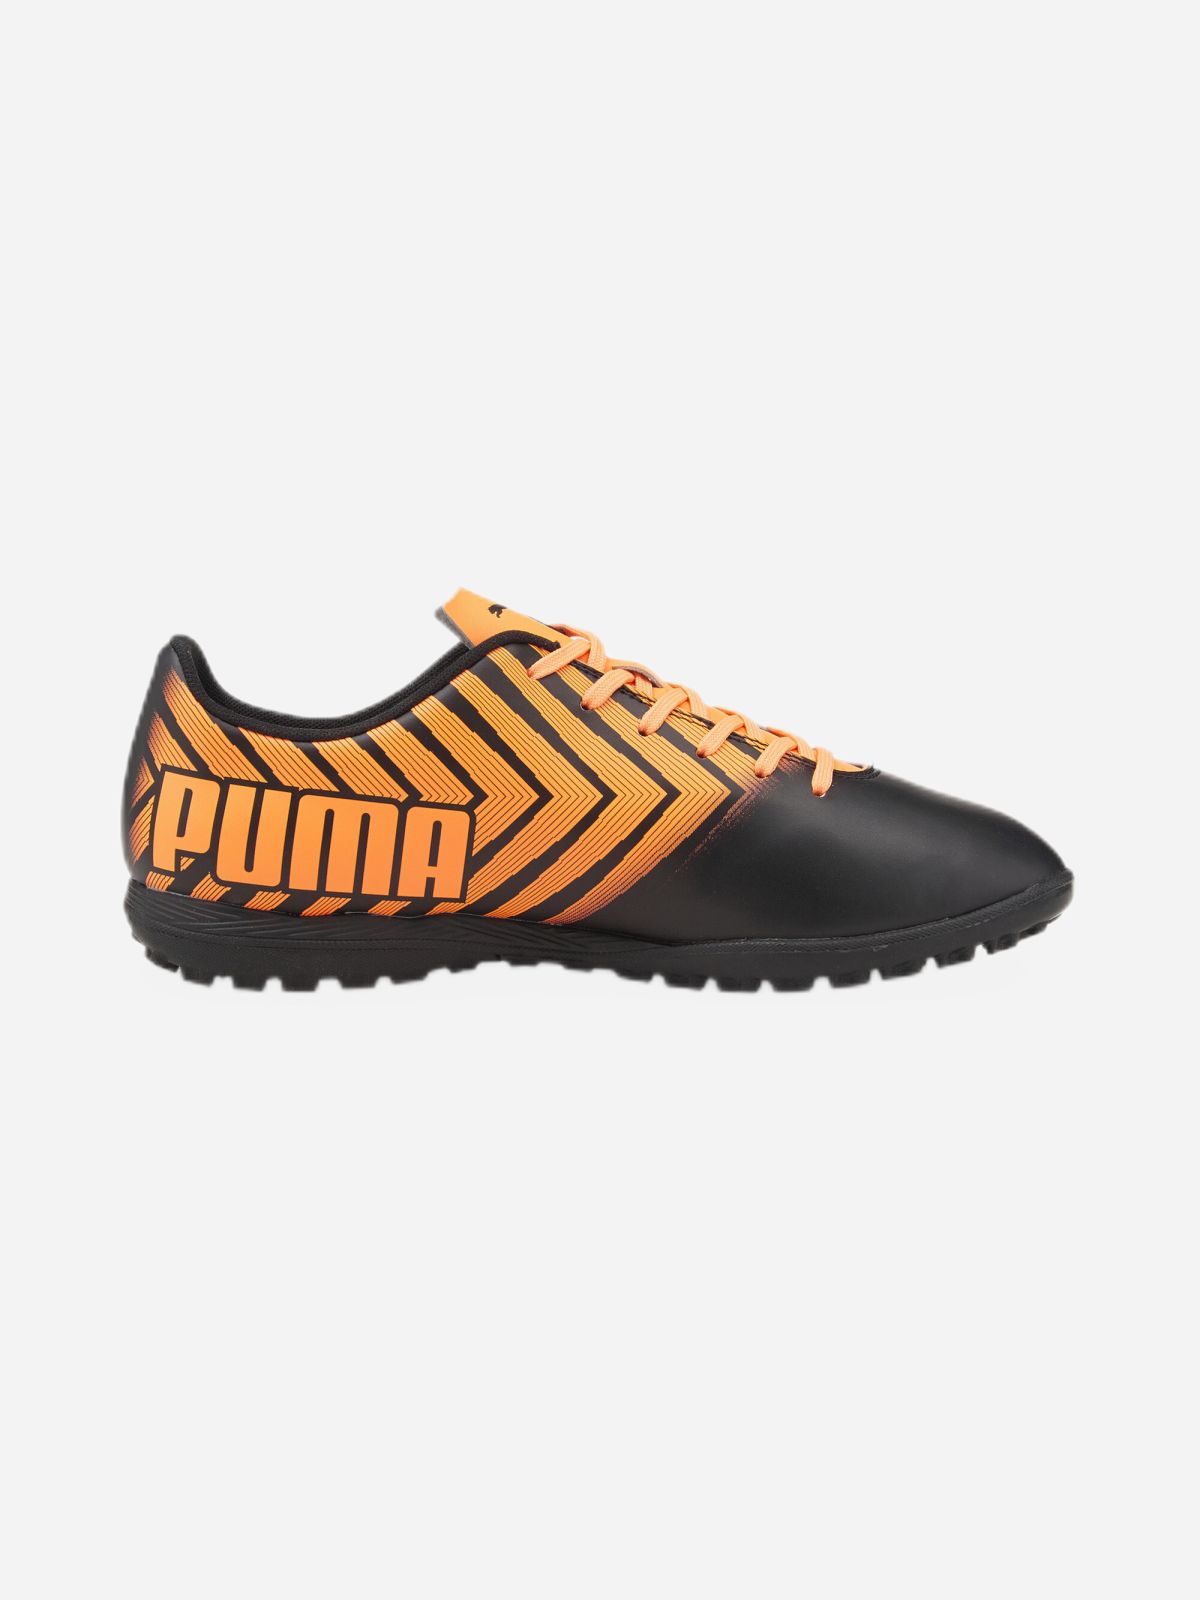  נעלי קט רגל Tacto II TT / גברים של PUMA